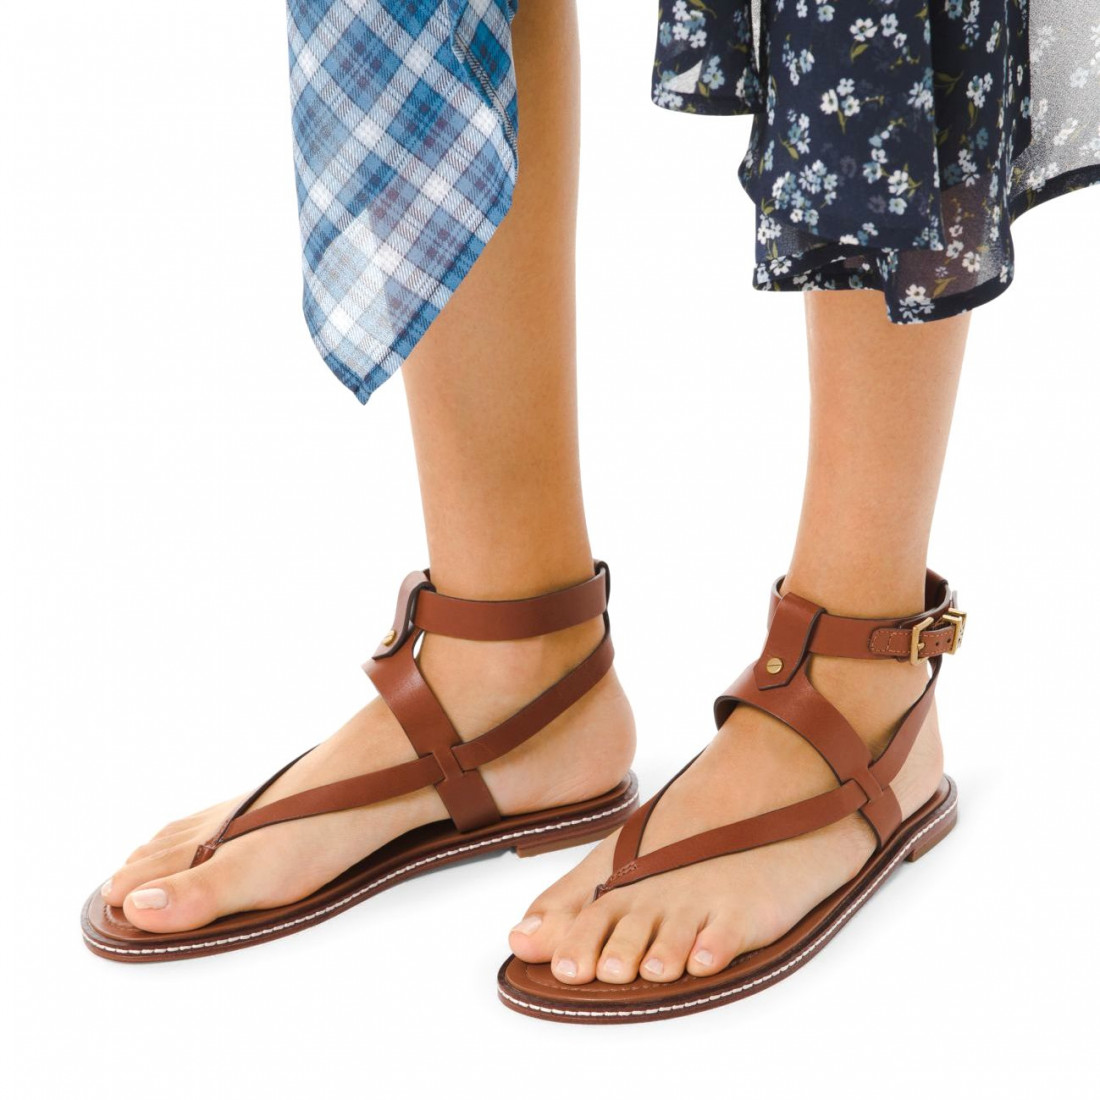 michael kors sandals for women